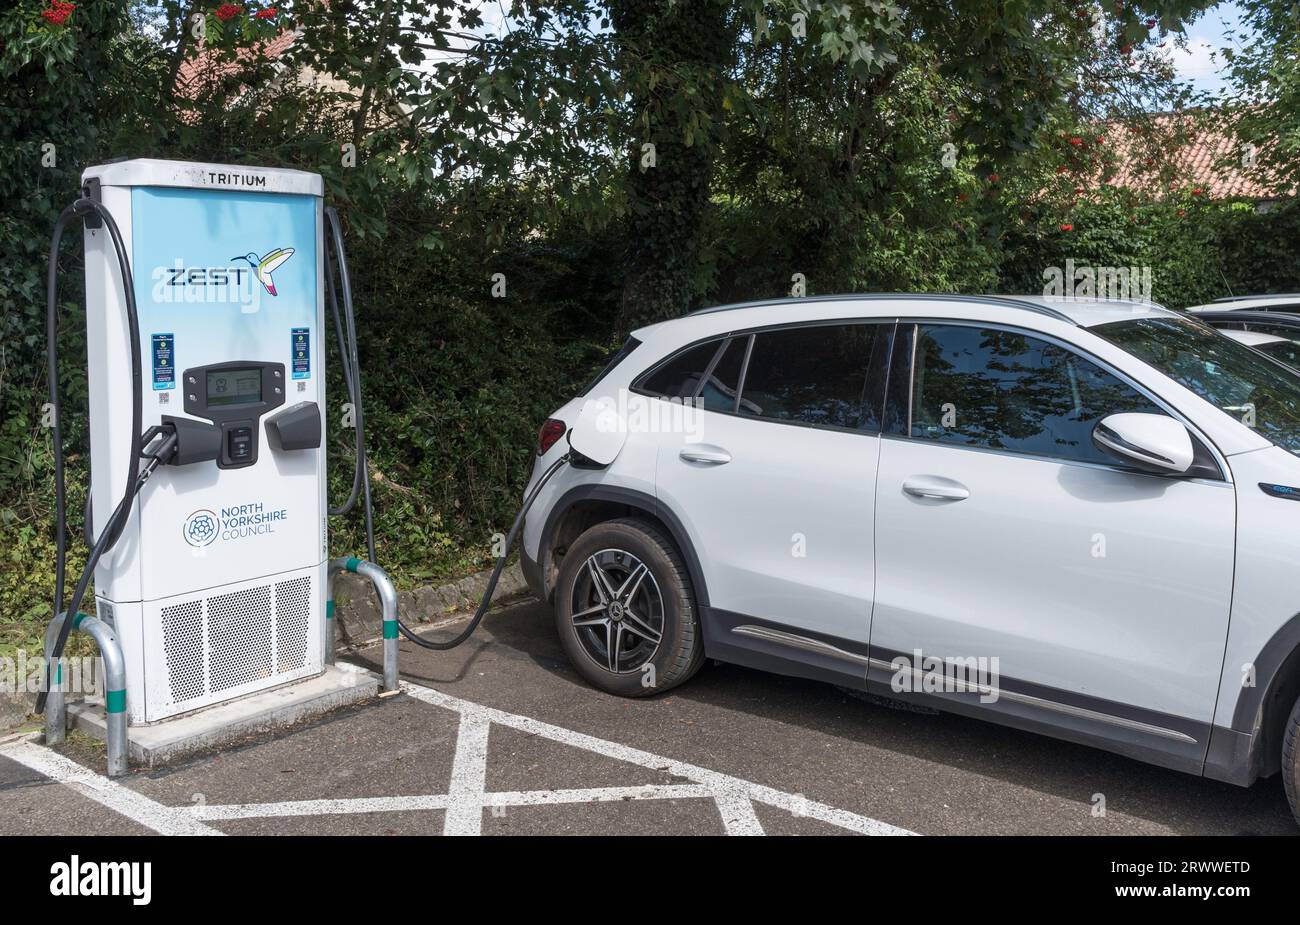 Recharge d'une voiture électrique à l'aide d'un chargeur Zest tritium à Helmsley, North Yorkshire, Angleterre, Royaume-Uni Banque D'Images